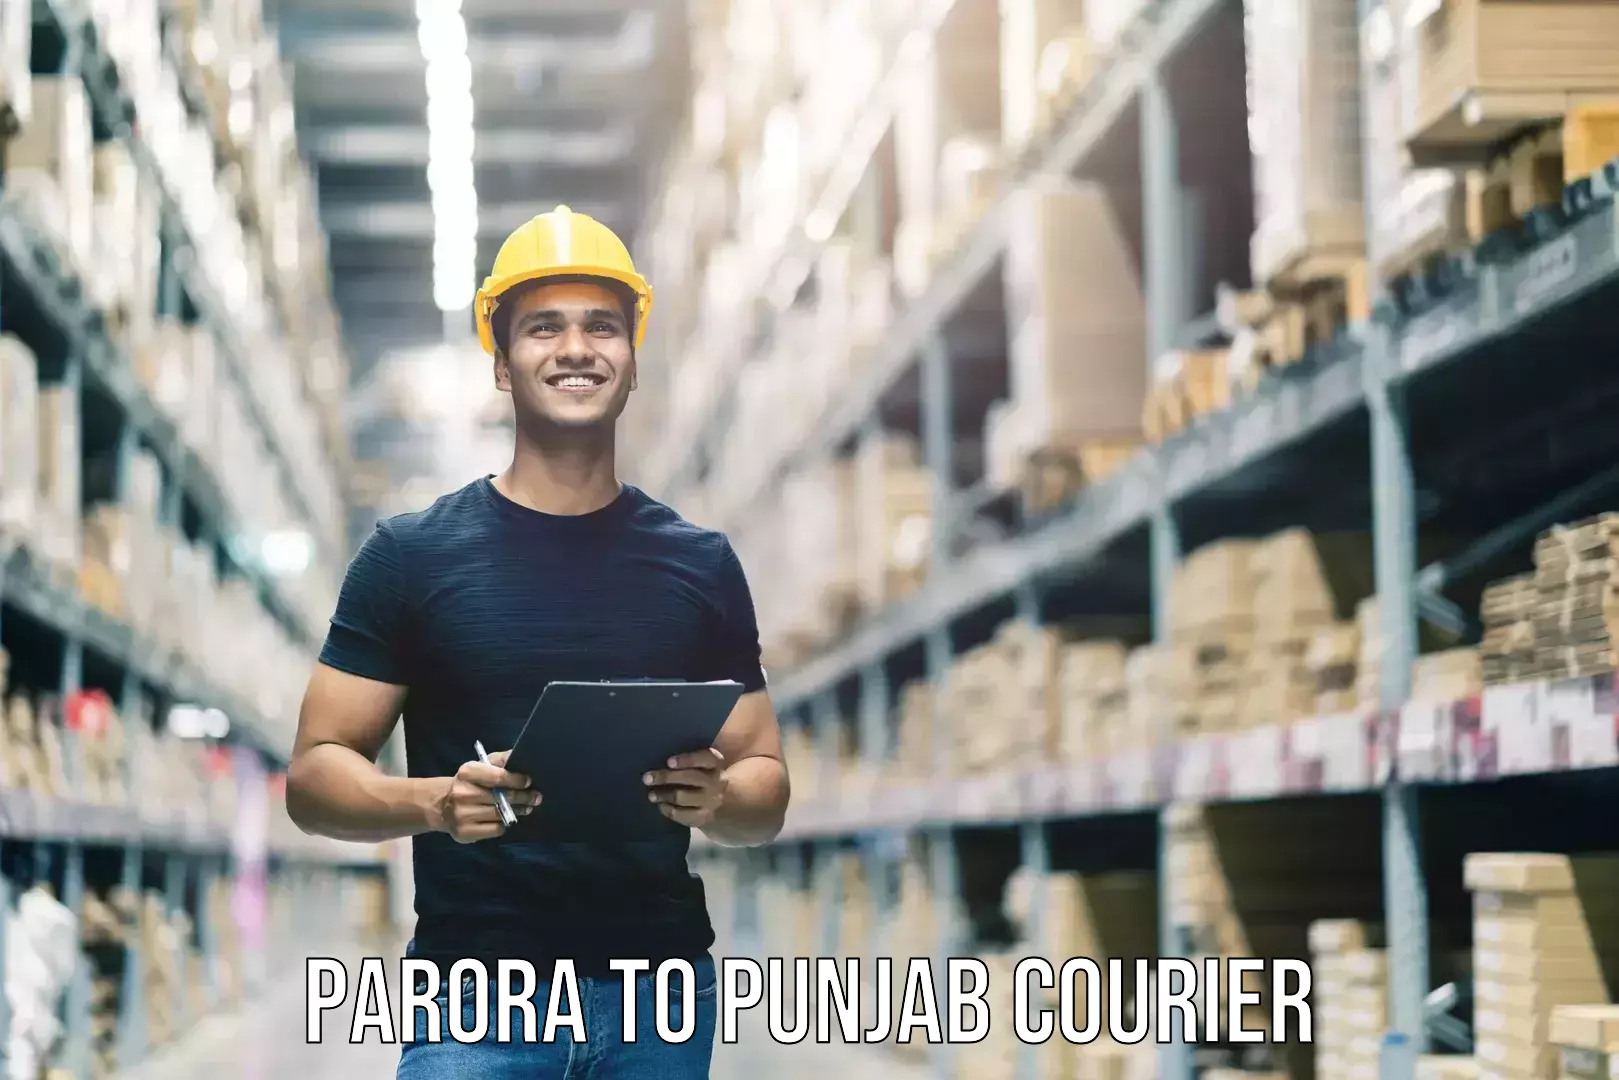 Baggage shipping schedule Parora to Central University of Punjab Bathinda